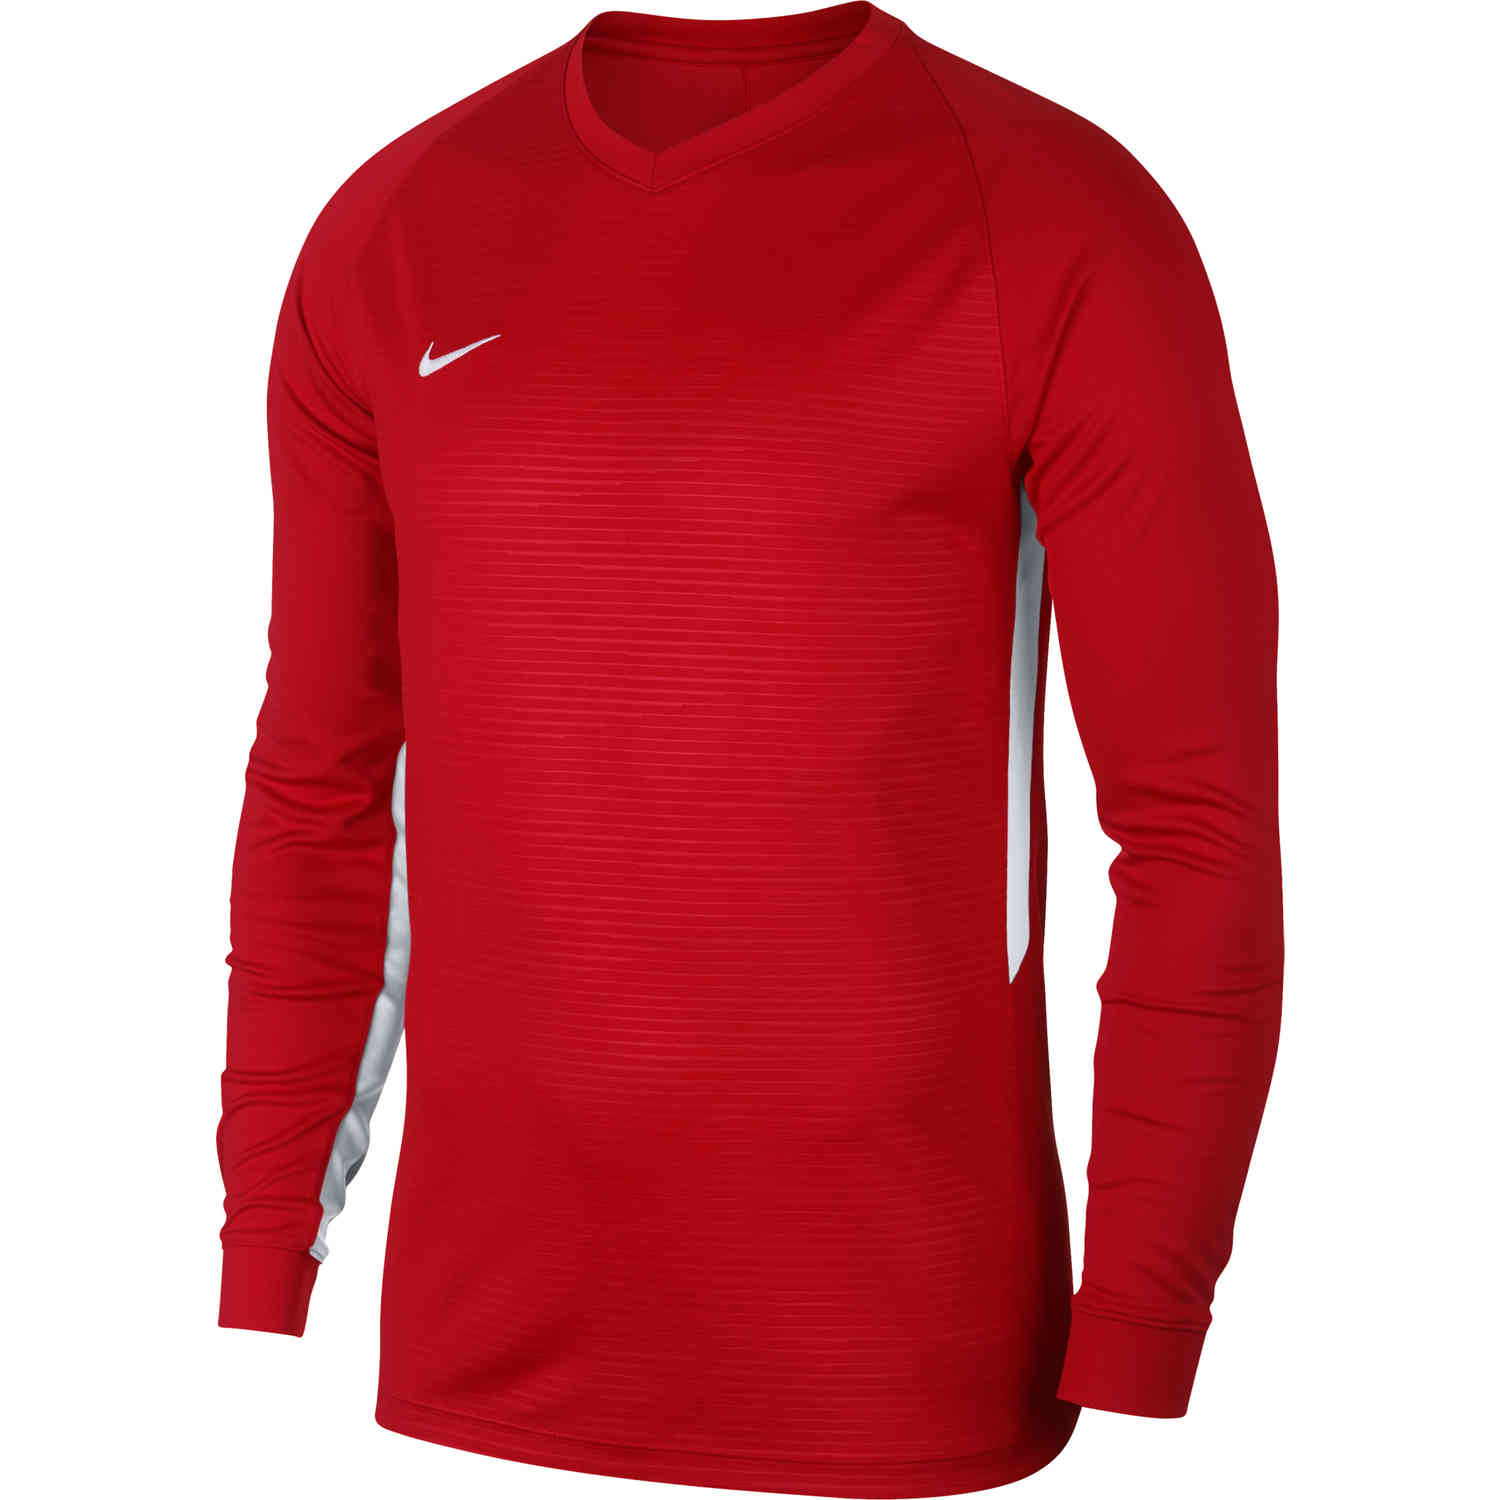 Nike Tiempo Premier L/S Jersey - University Red - SoccerPro